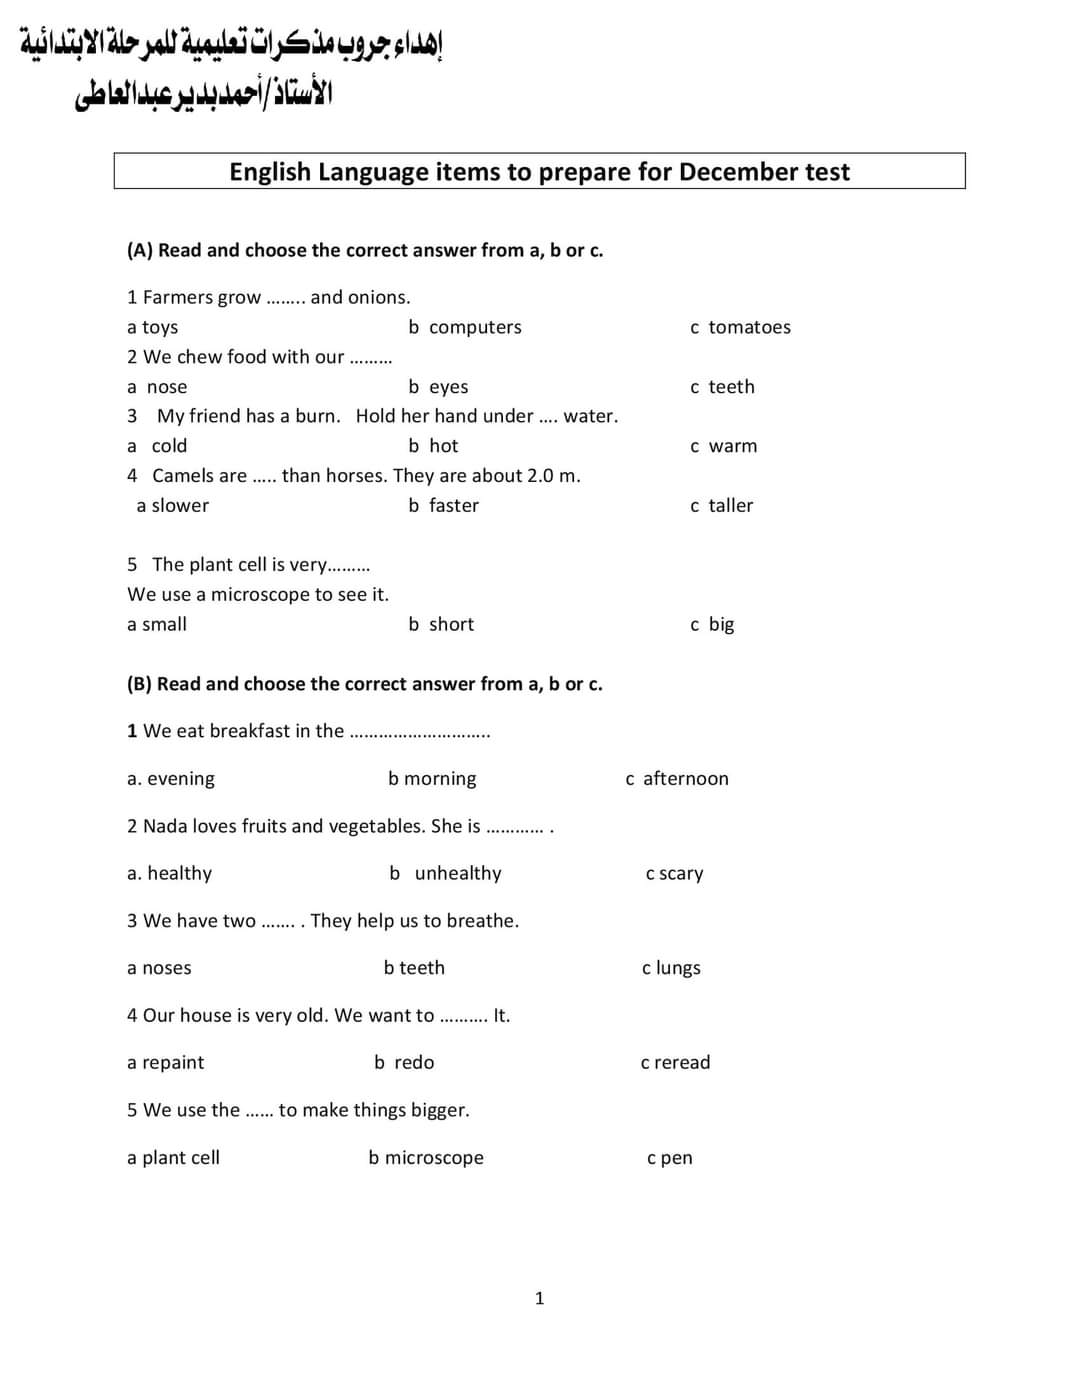 مراجعة ليلة الامتحان لغة انجليزية رابعة ابتدائي - اجابة نماذج الوزارة